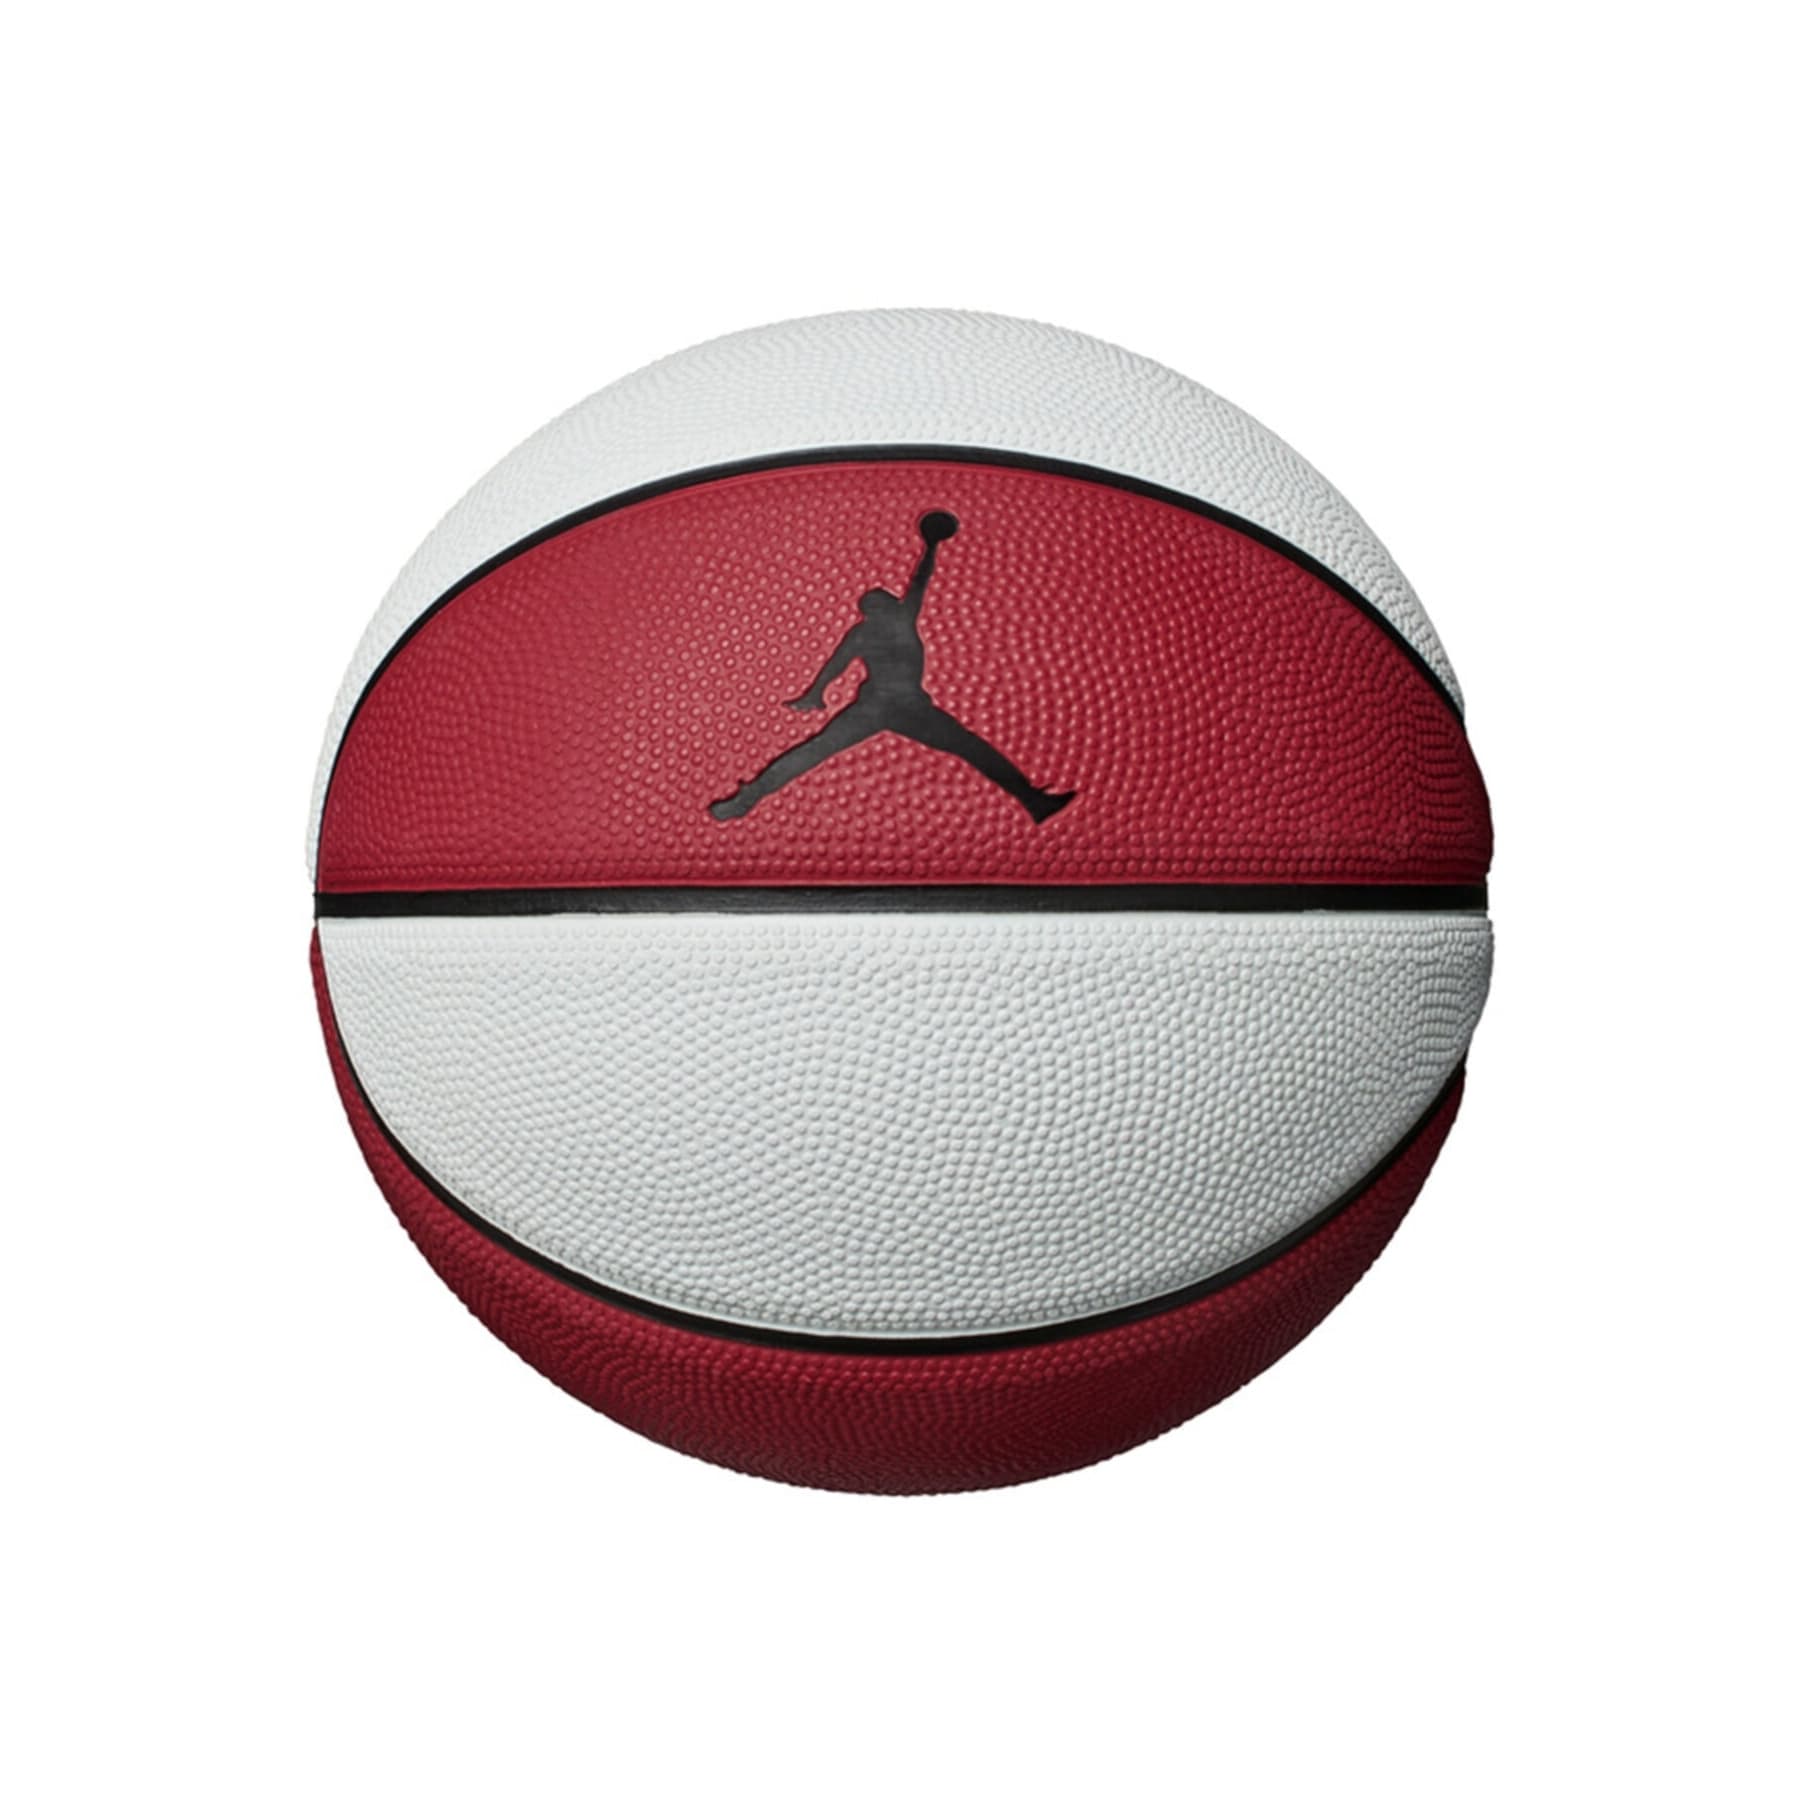 Jordan Skills Gym Basketbol Topu (J.000.1884.611.03)